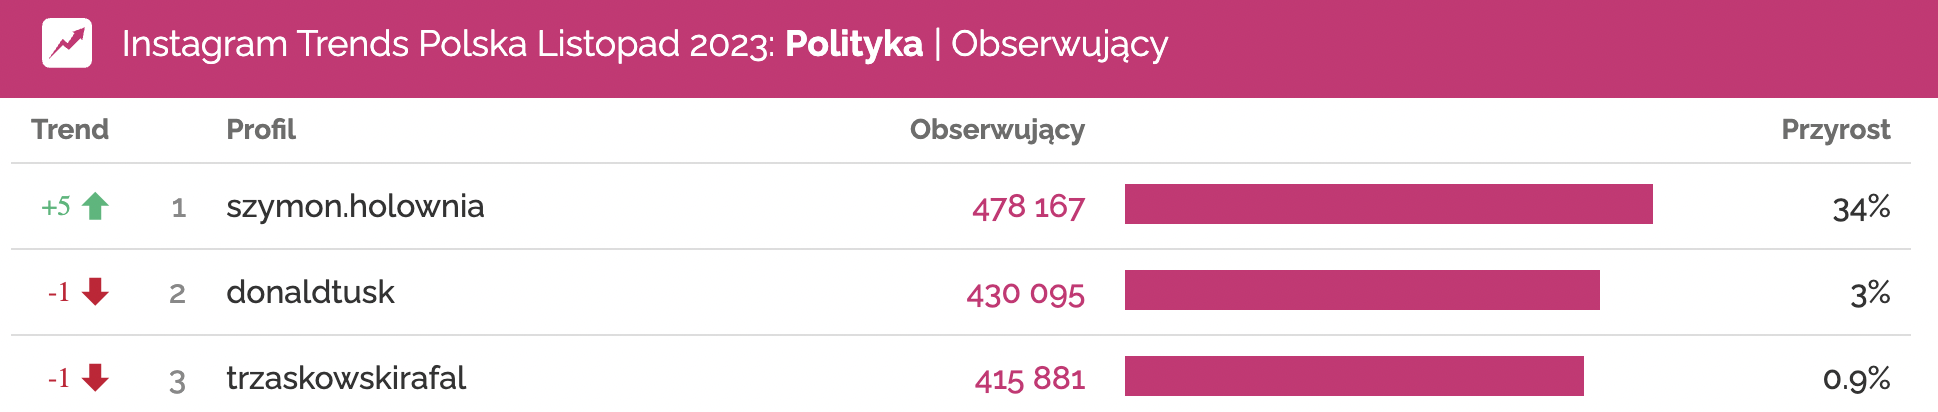 szymon hołownia największy profil polityka na polskim instagramie